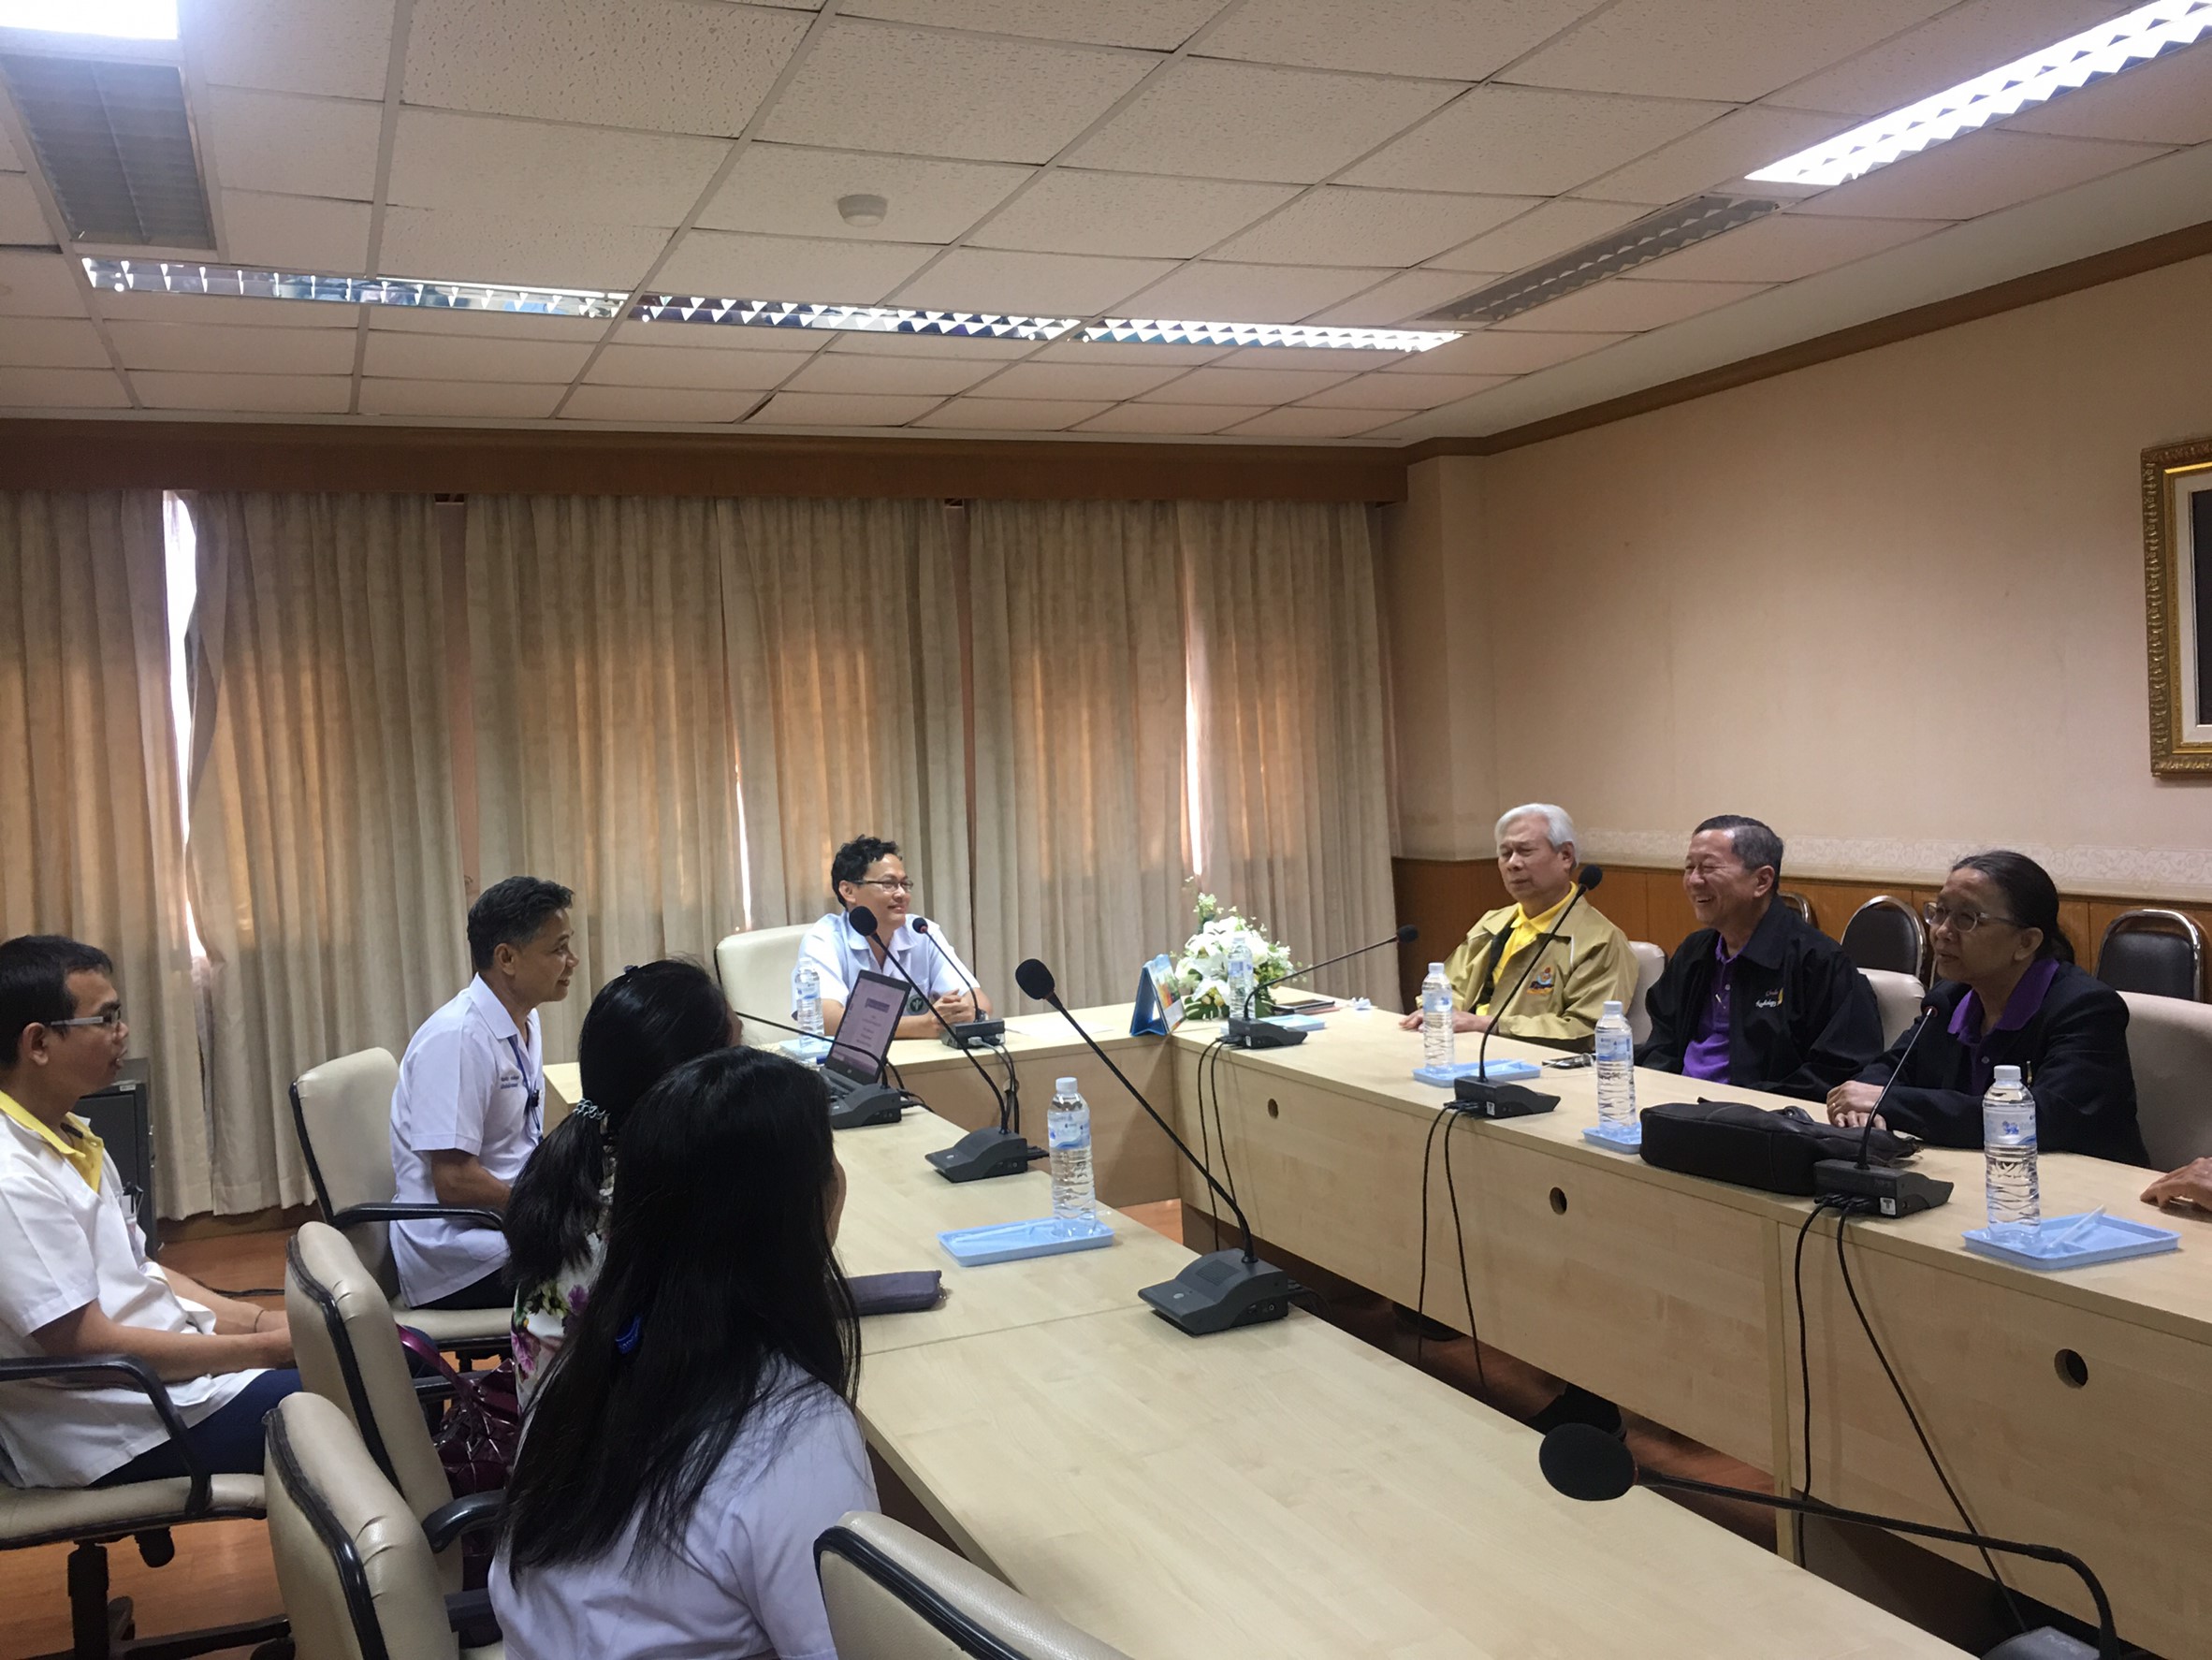 ประชุมวิชาการร่วมกับรังสีการแพทย์แห่งประเทศไทย ครั้งที่17 27-29 พ.ย. - พร้อมเข้าเยี่ยมและให้กำลังใจหน่วยงานรังสีวิทยาในพื้นที่จังหวัดอุบลราชธานีระหว่างวันที่ 25-26 พฤศจิกายน 2562 32